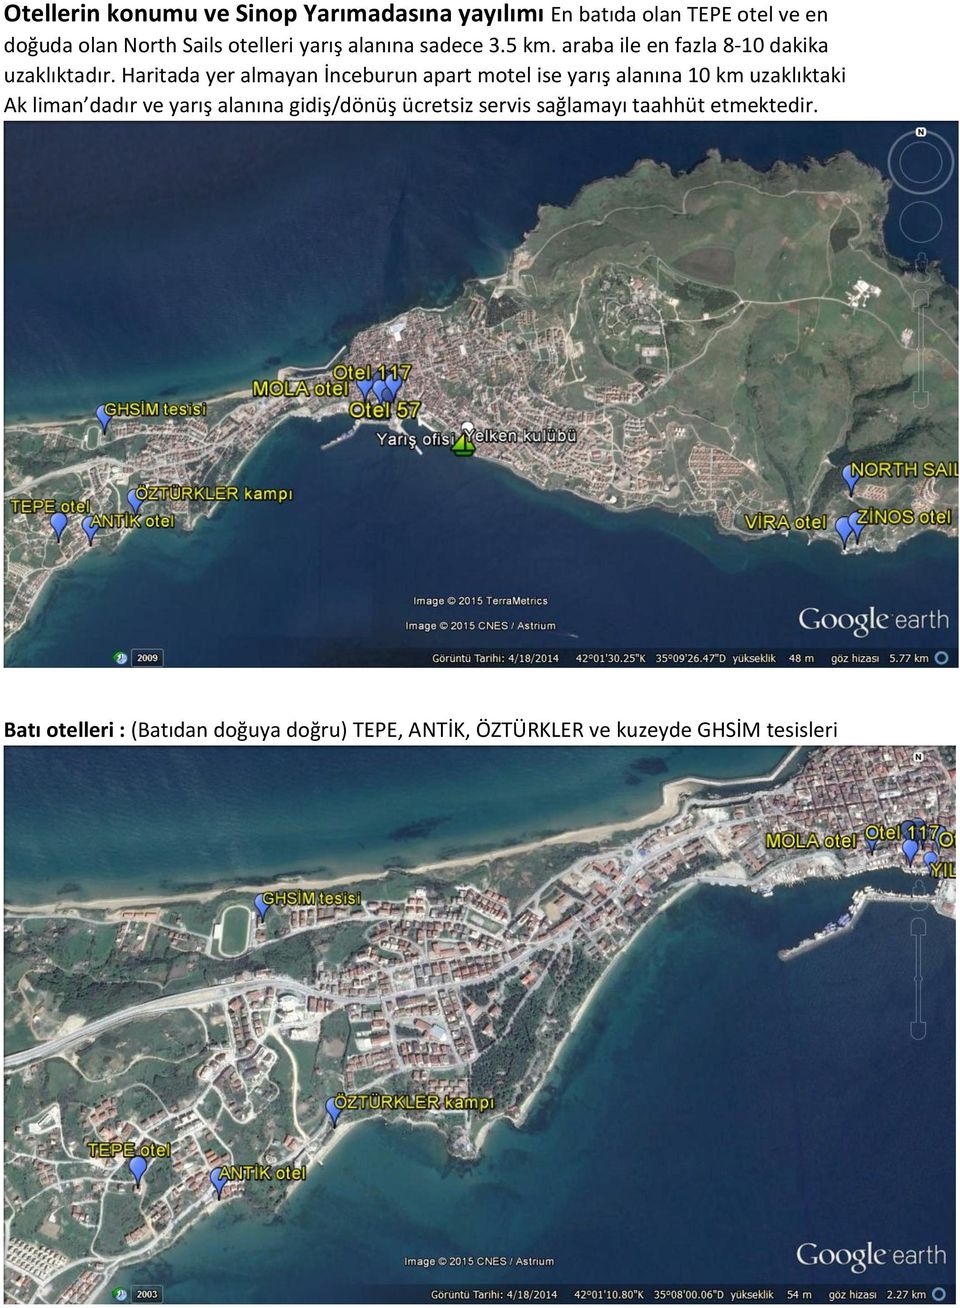 Haritada yer almayan İnceburun apart motel ise yarış alanına 10 km uzaklıktaki Ak liman dadır ve yarış alanına